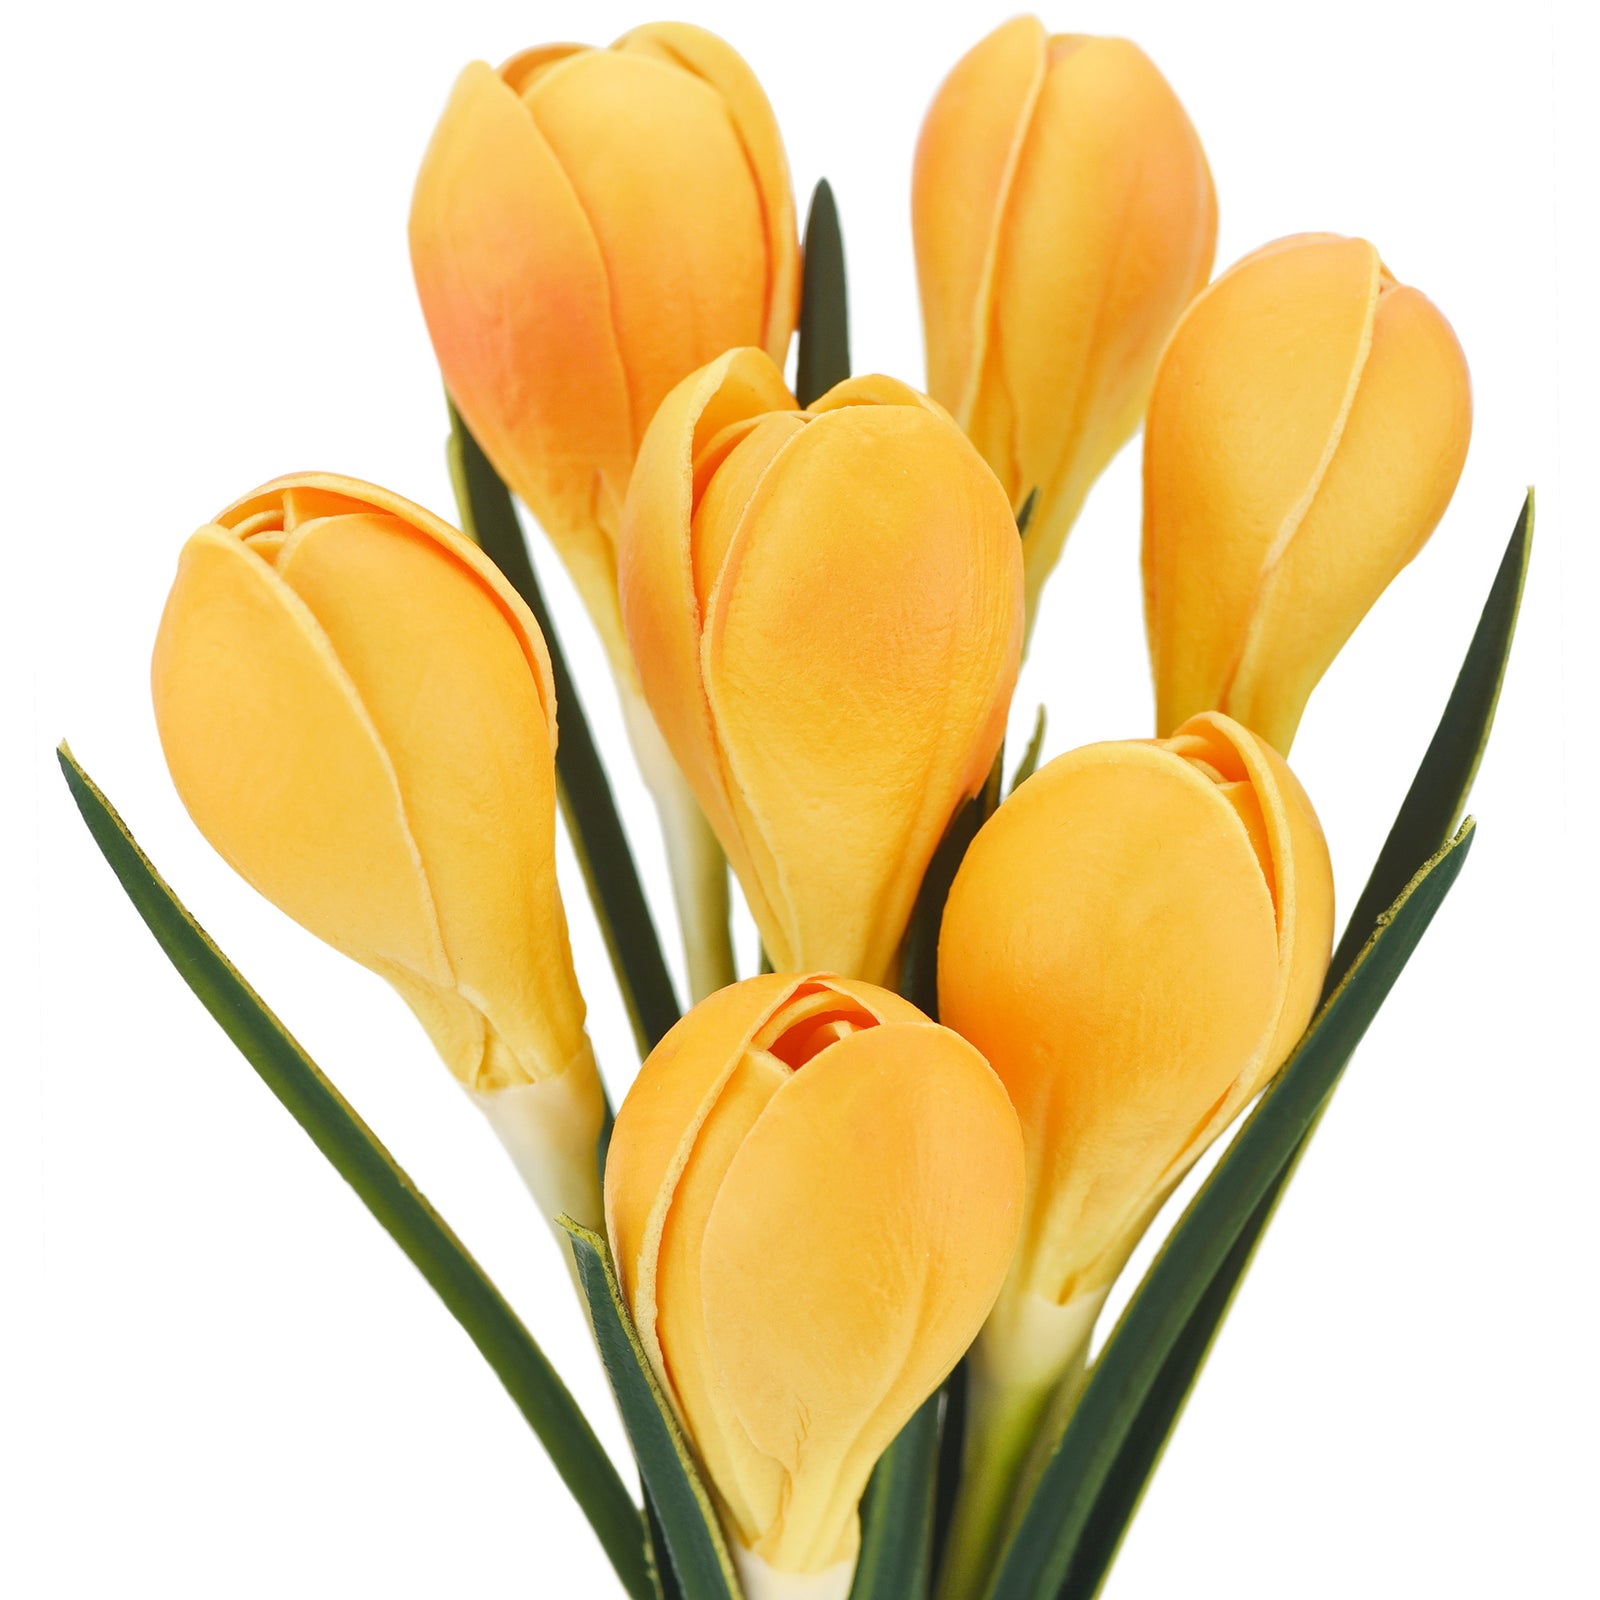 7 Stems (Orange) Realistic Artificial Saffron Crocus Flowers